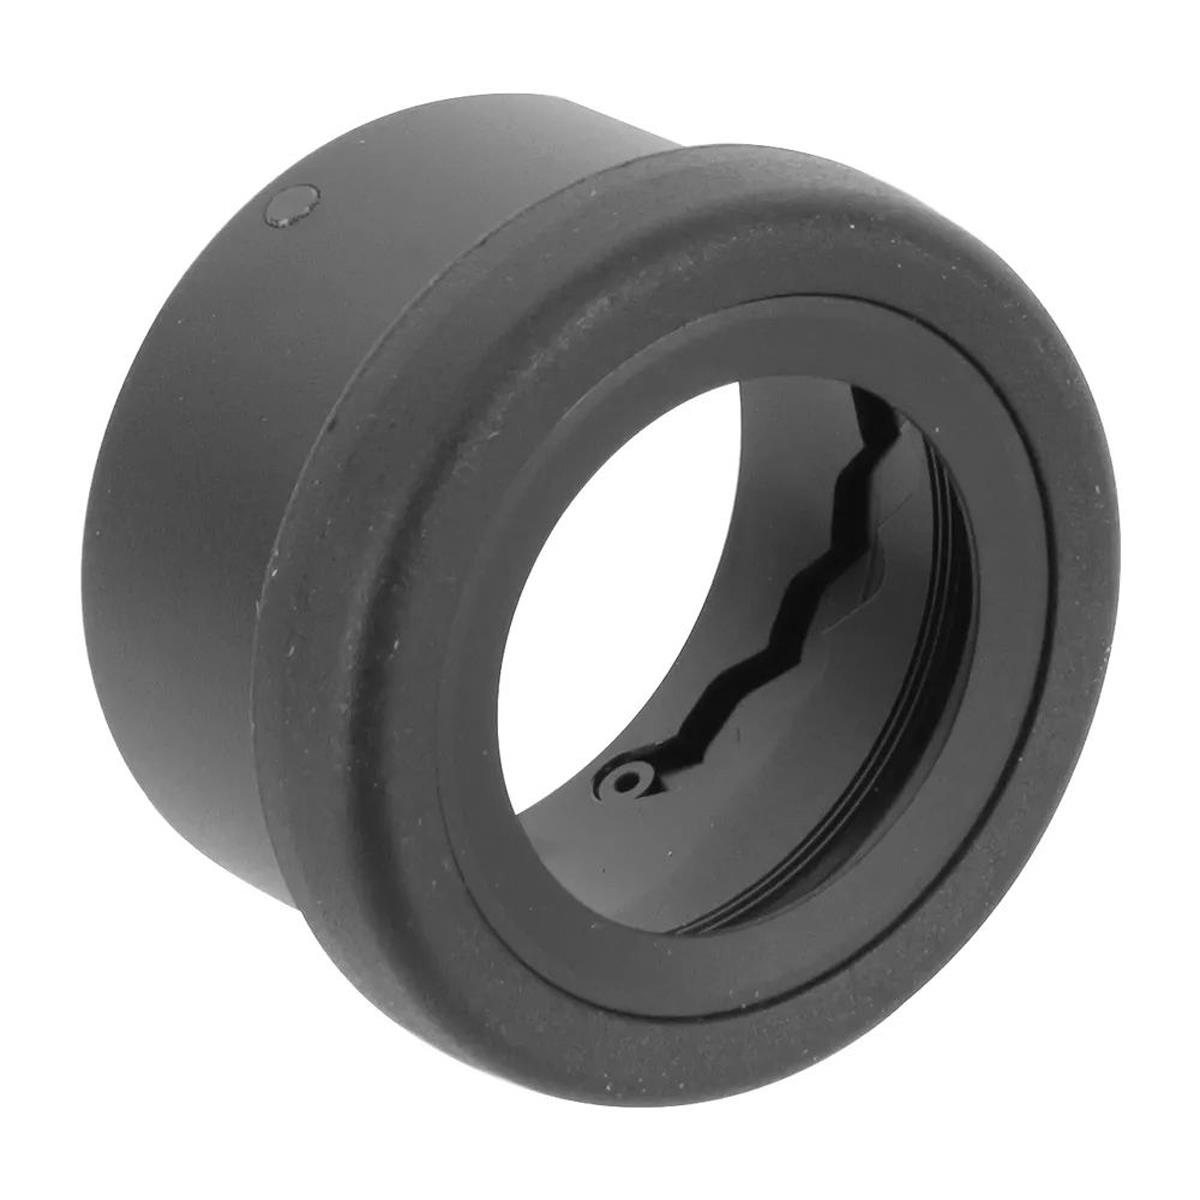 Image of Swarovski Optik Eyecup for NL Pure Binoculars